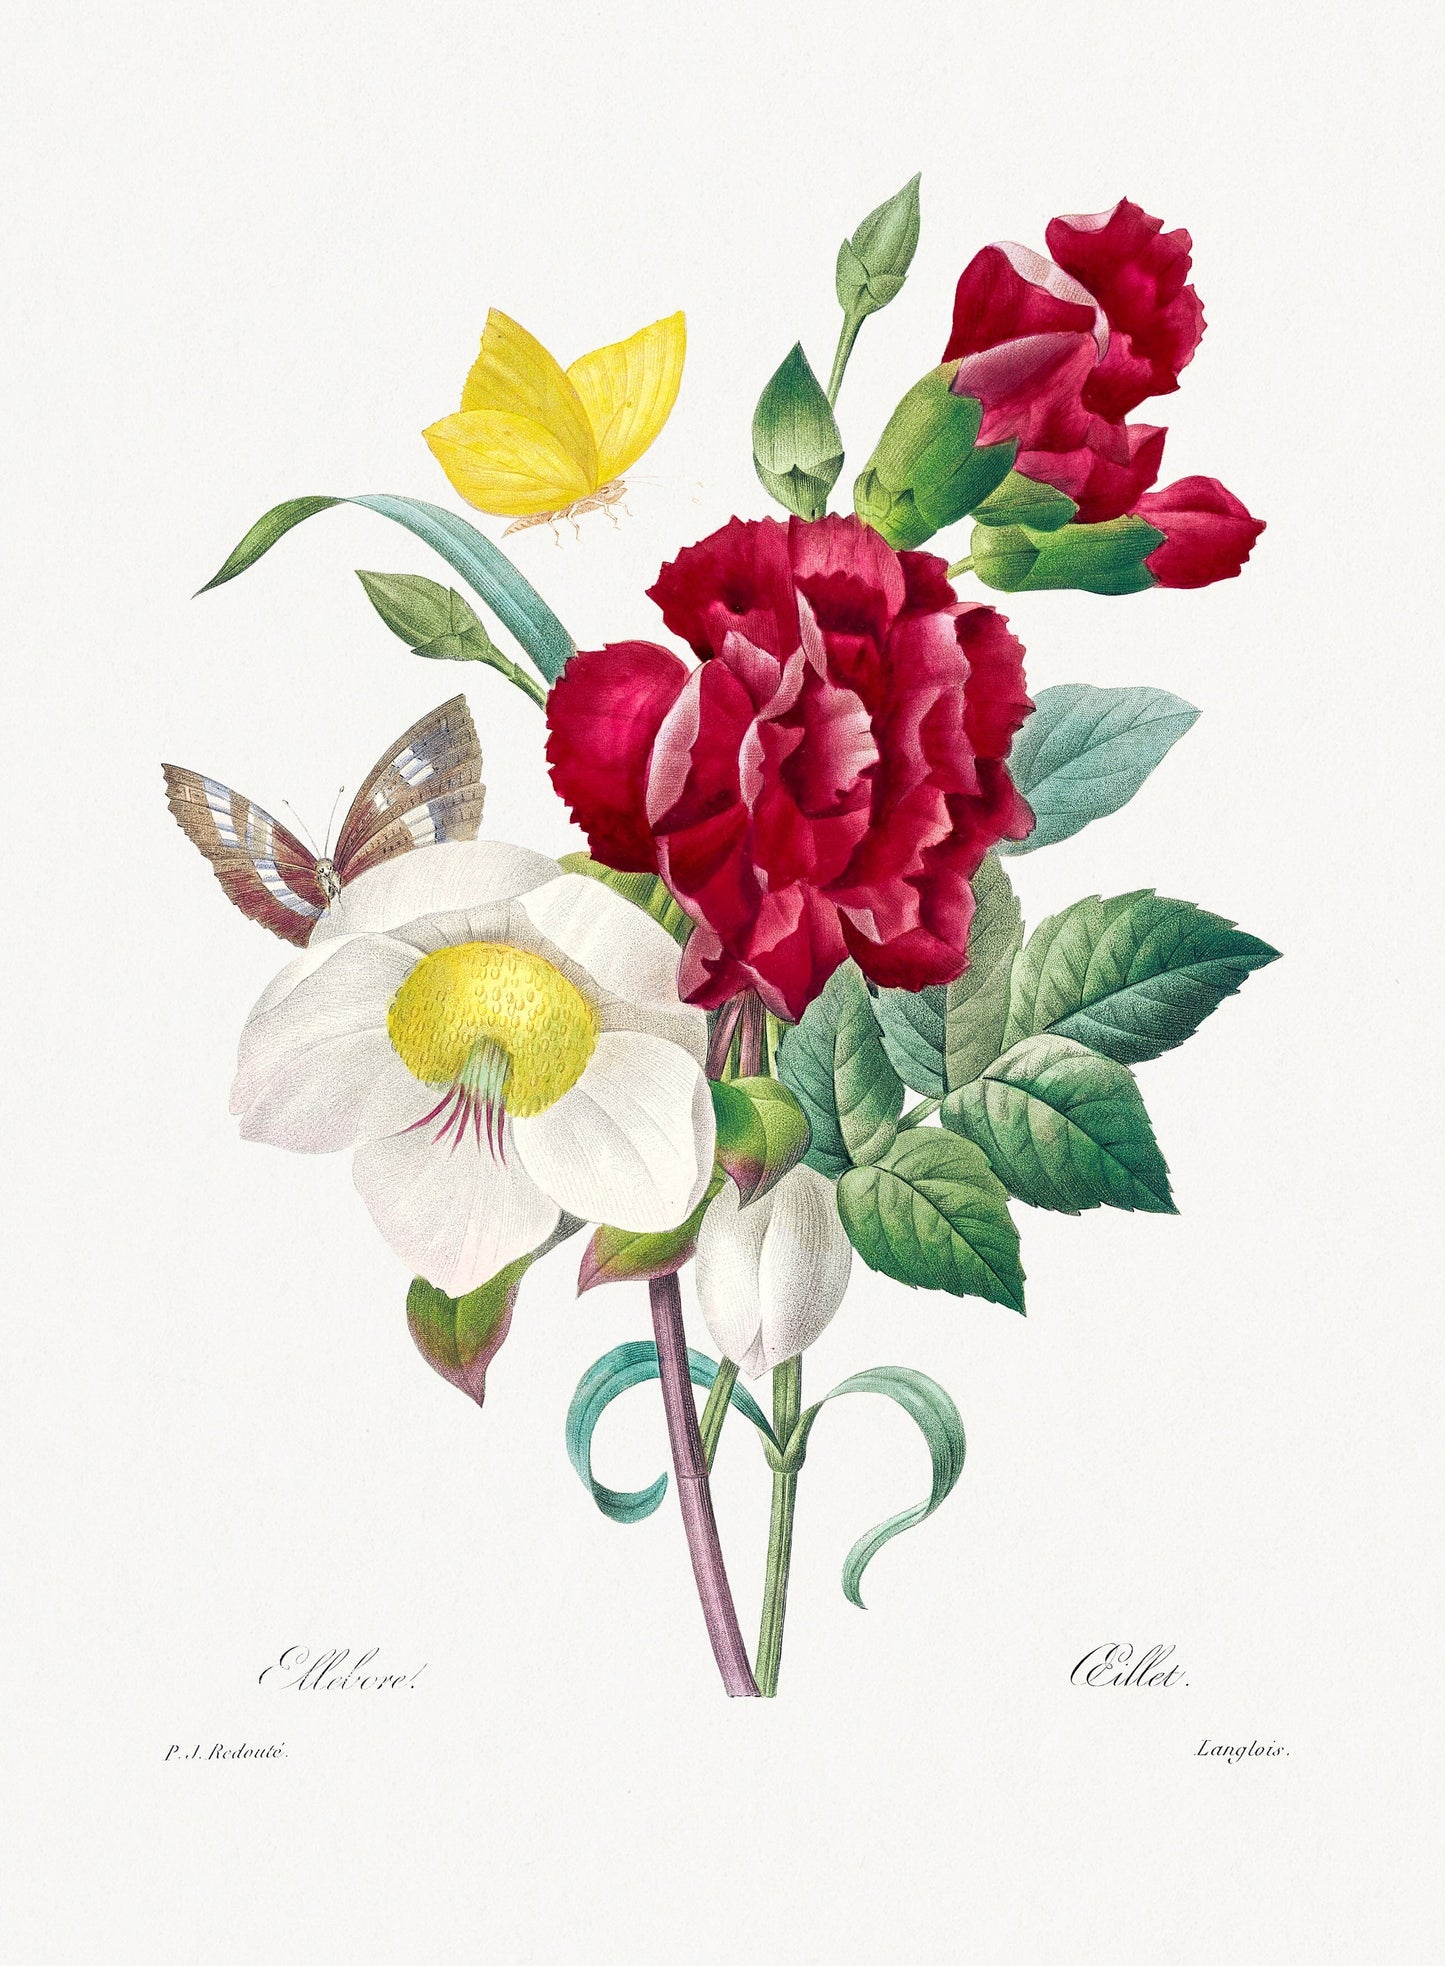 Hellebore and Oeillet (1800s) | Botanical prints | Pierre-Joseph Redouté Posters, Prints, & Visual Artwork The Trumpet Shop Vintage Prints   